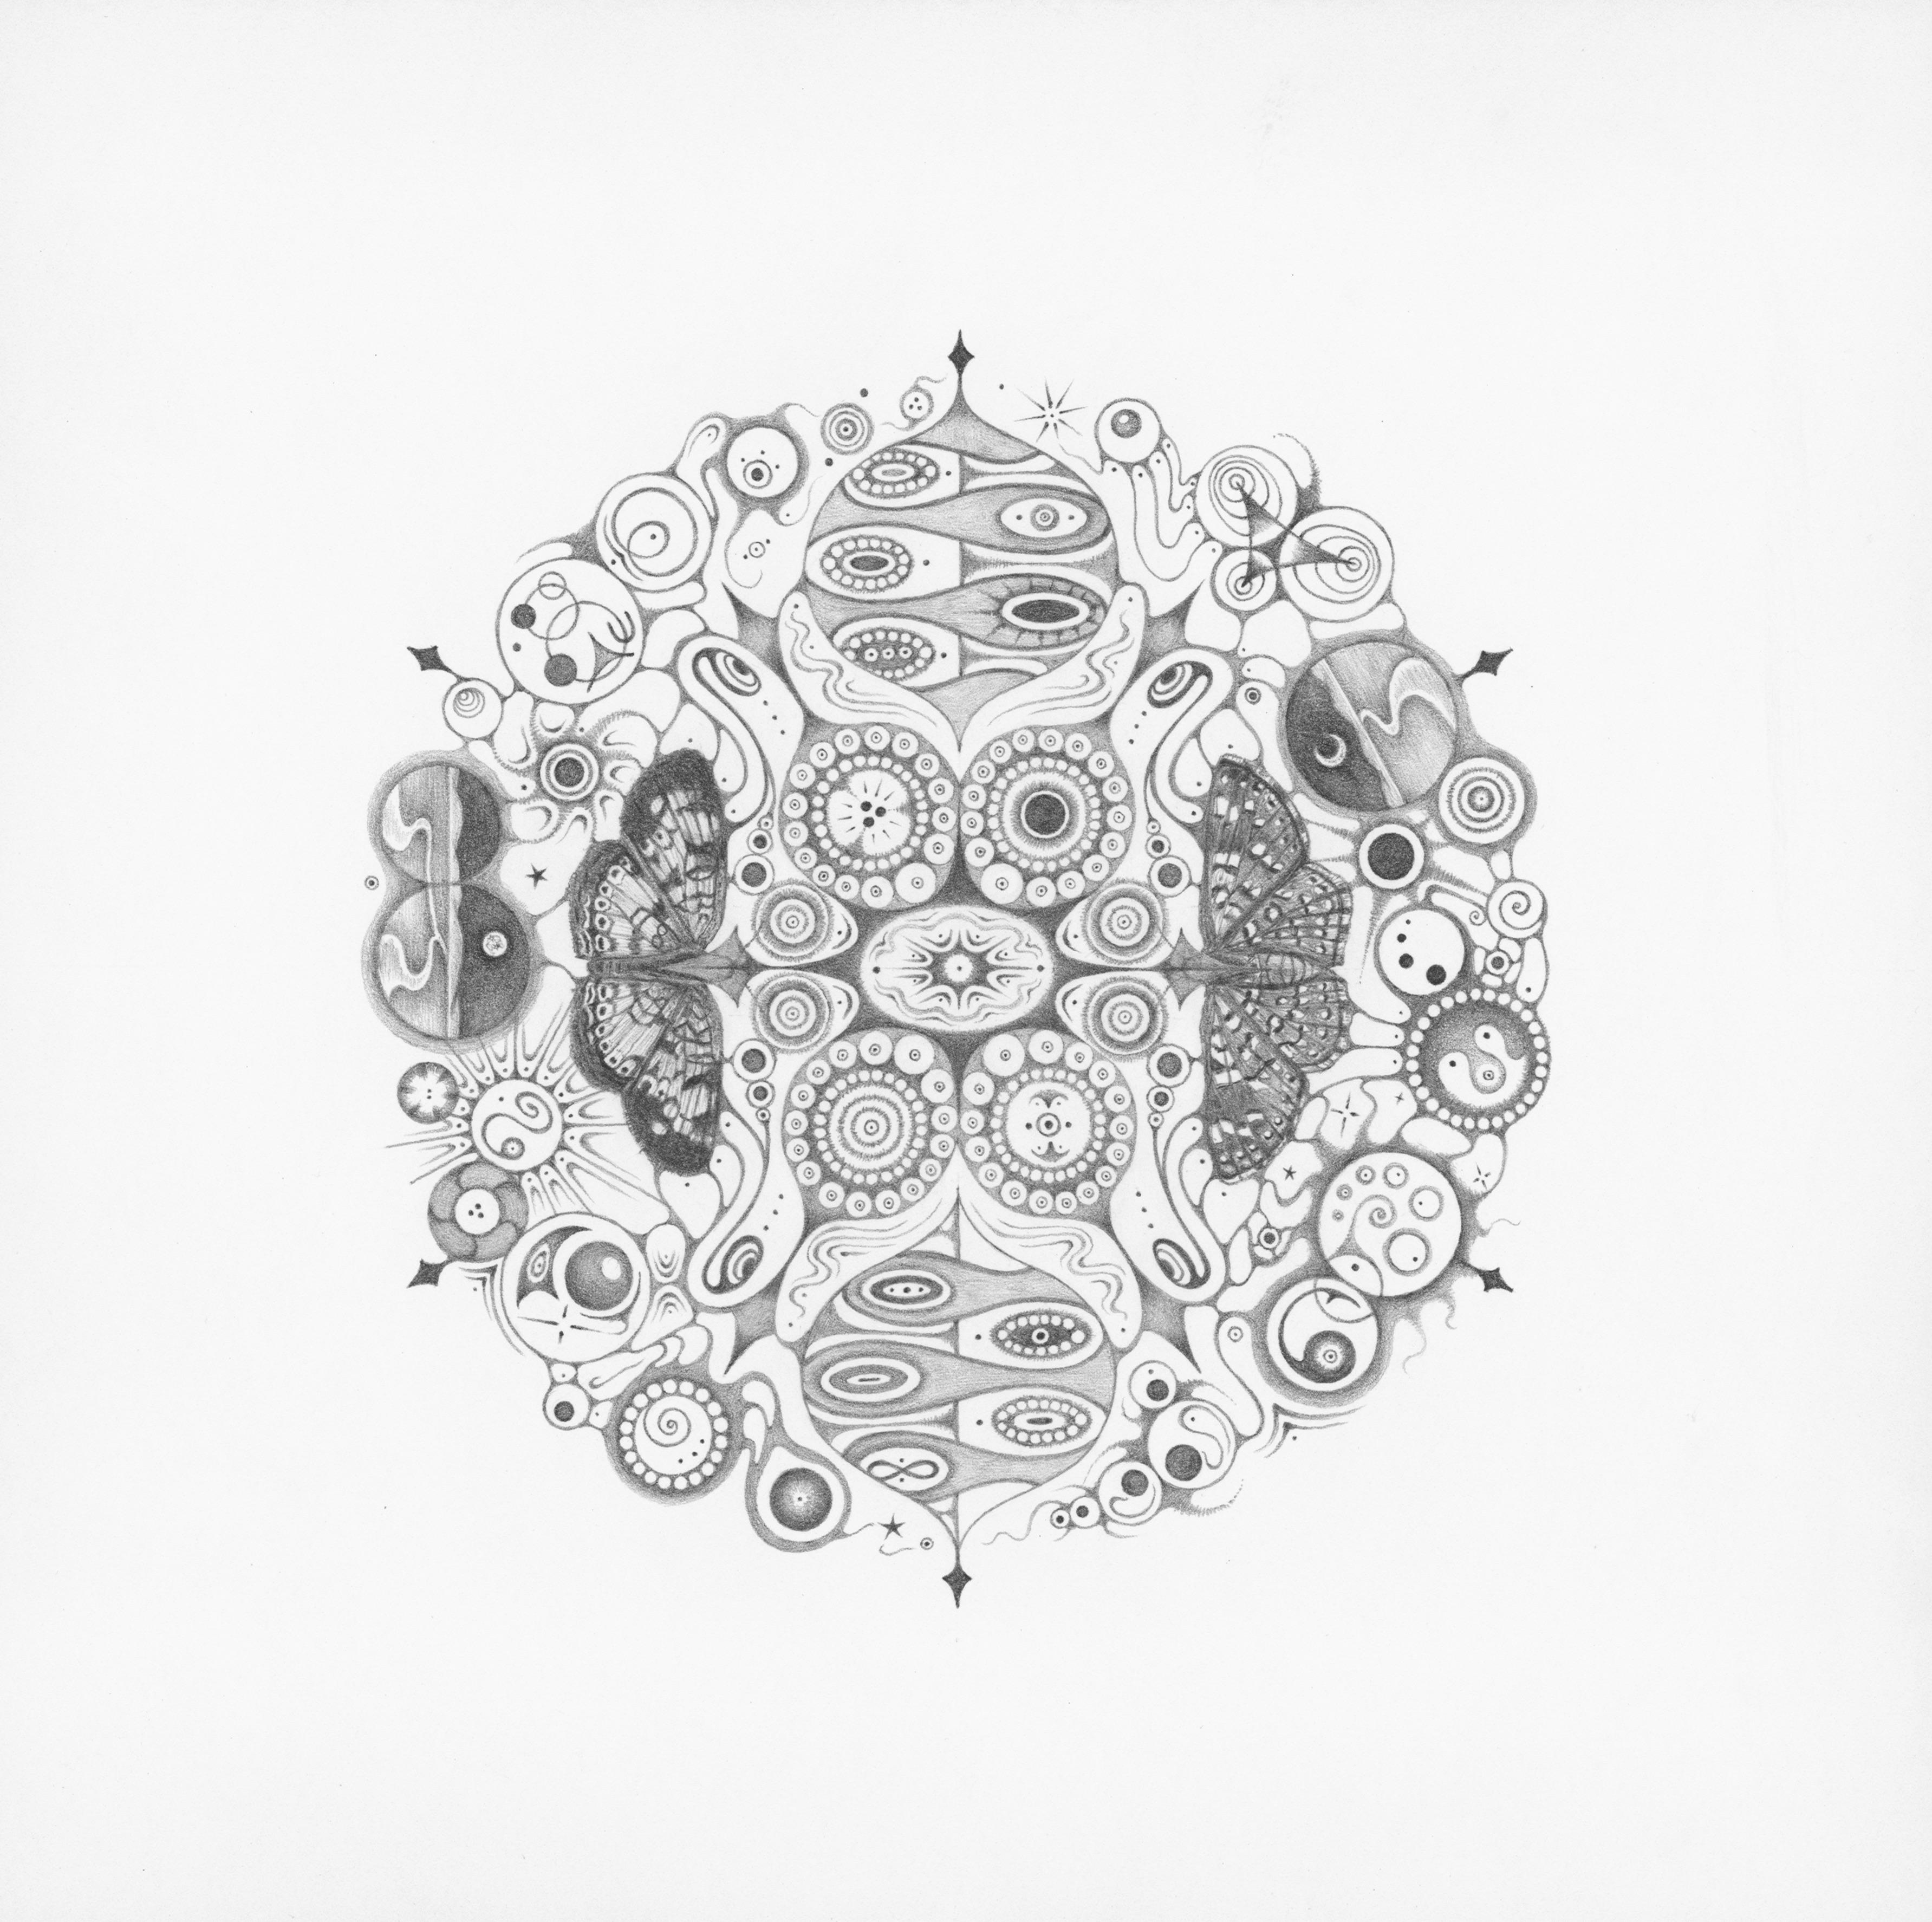 Michiyo Ihara Abstract Drawing - Snowflakes 146 Joy, Mandala Pencil Drawing with Butterflies, Landscapes, Pattern